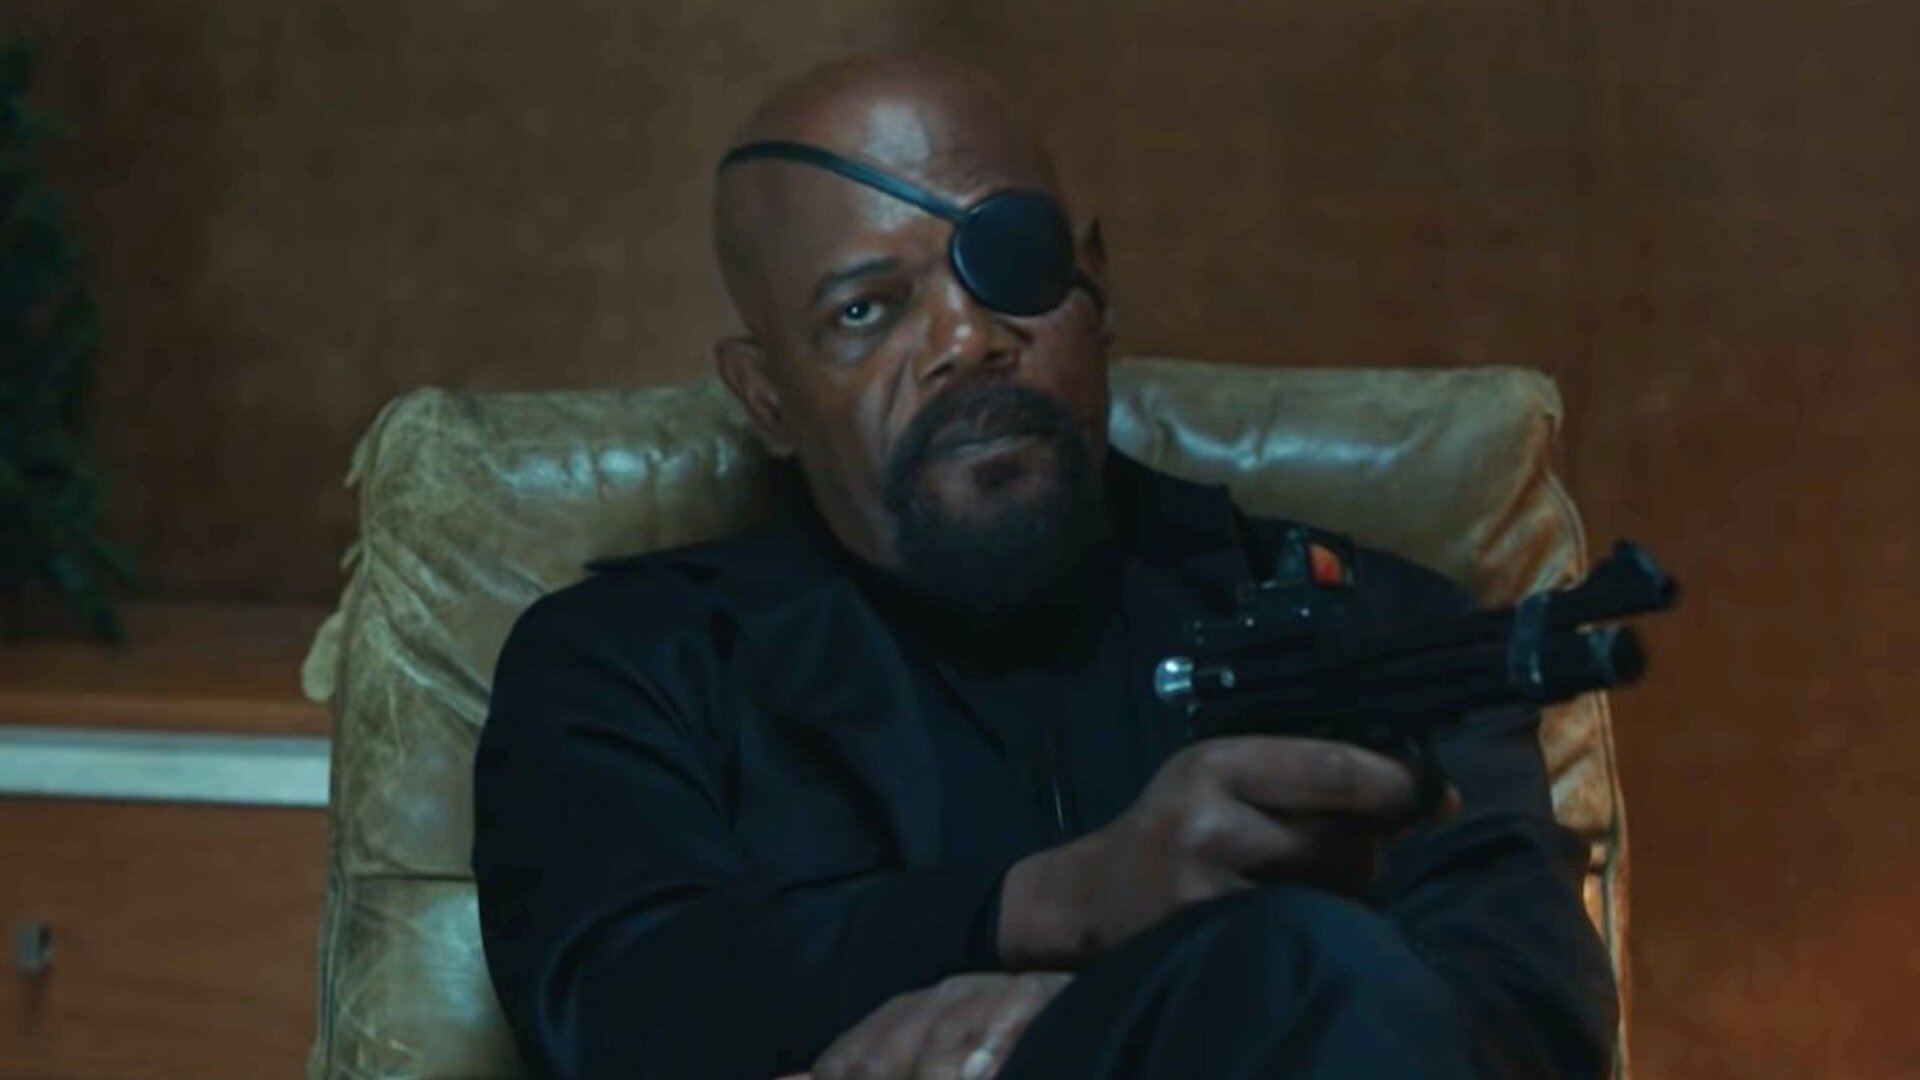 Samuel L. Jackson as Nick Fury